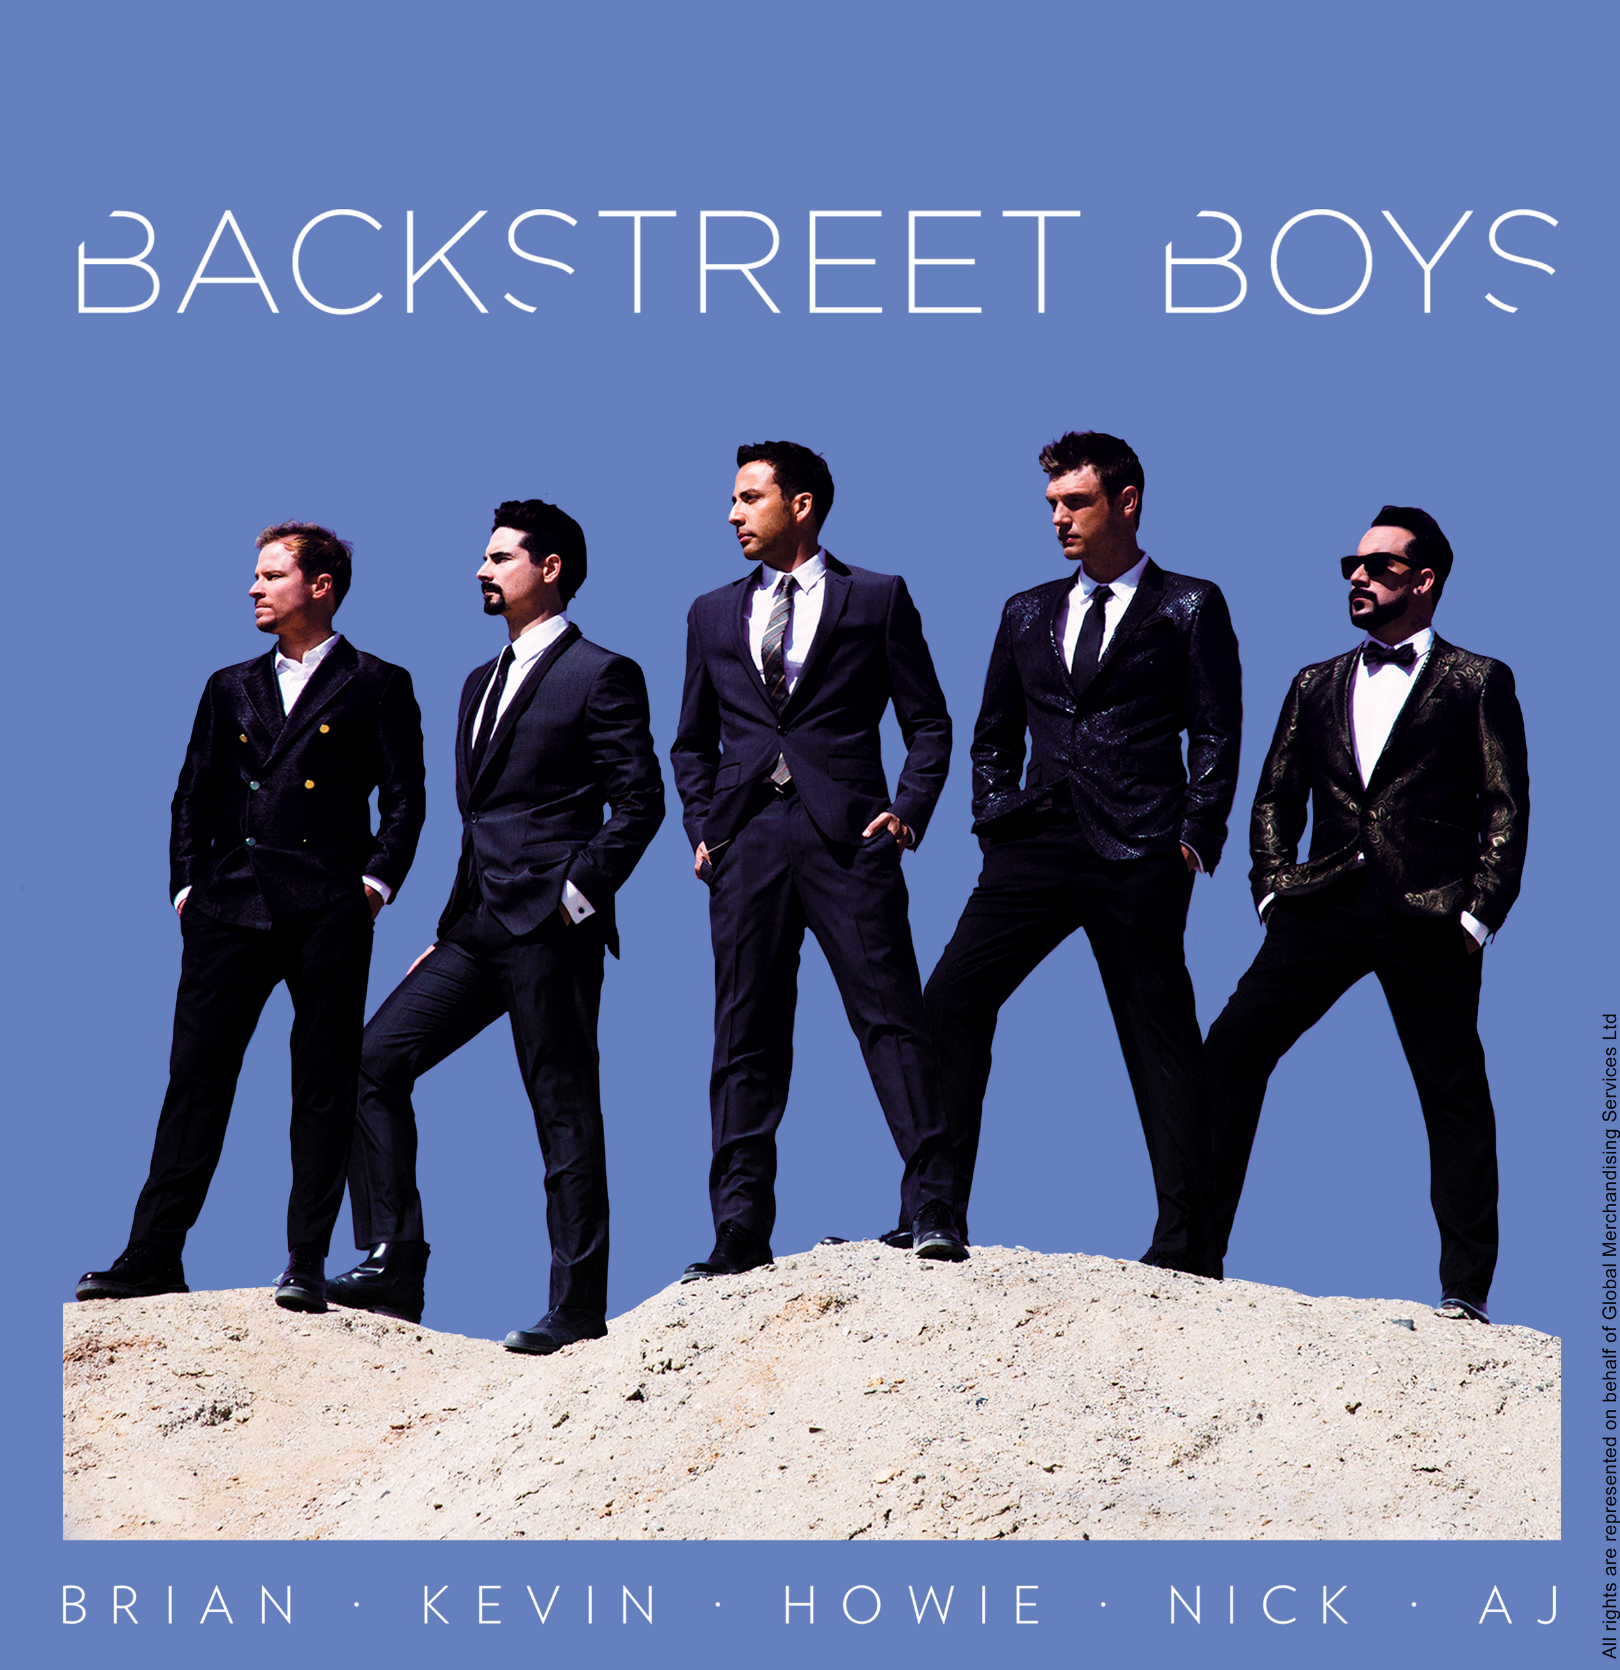 Backstreet boys album. Backstreet boys обложка. Backstreet boys альбомы. Backstreet boys album Cover. Everybody backstreets back